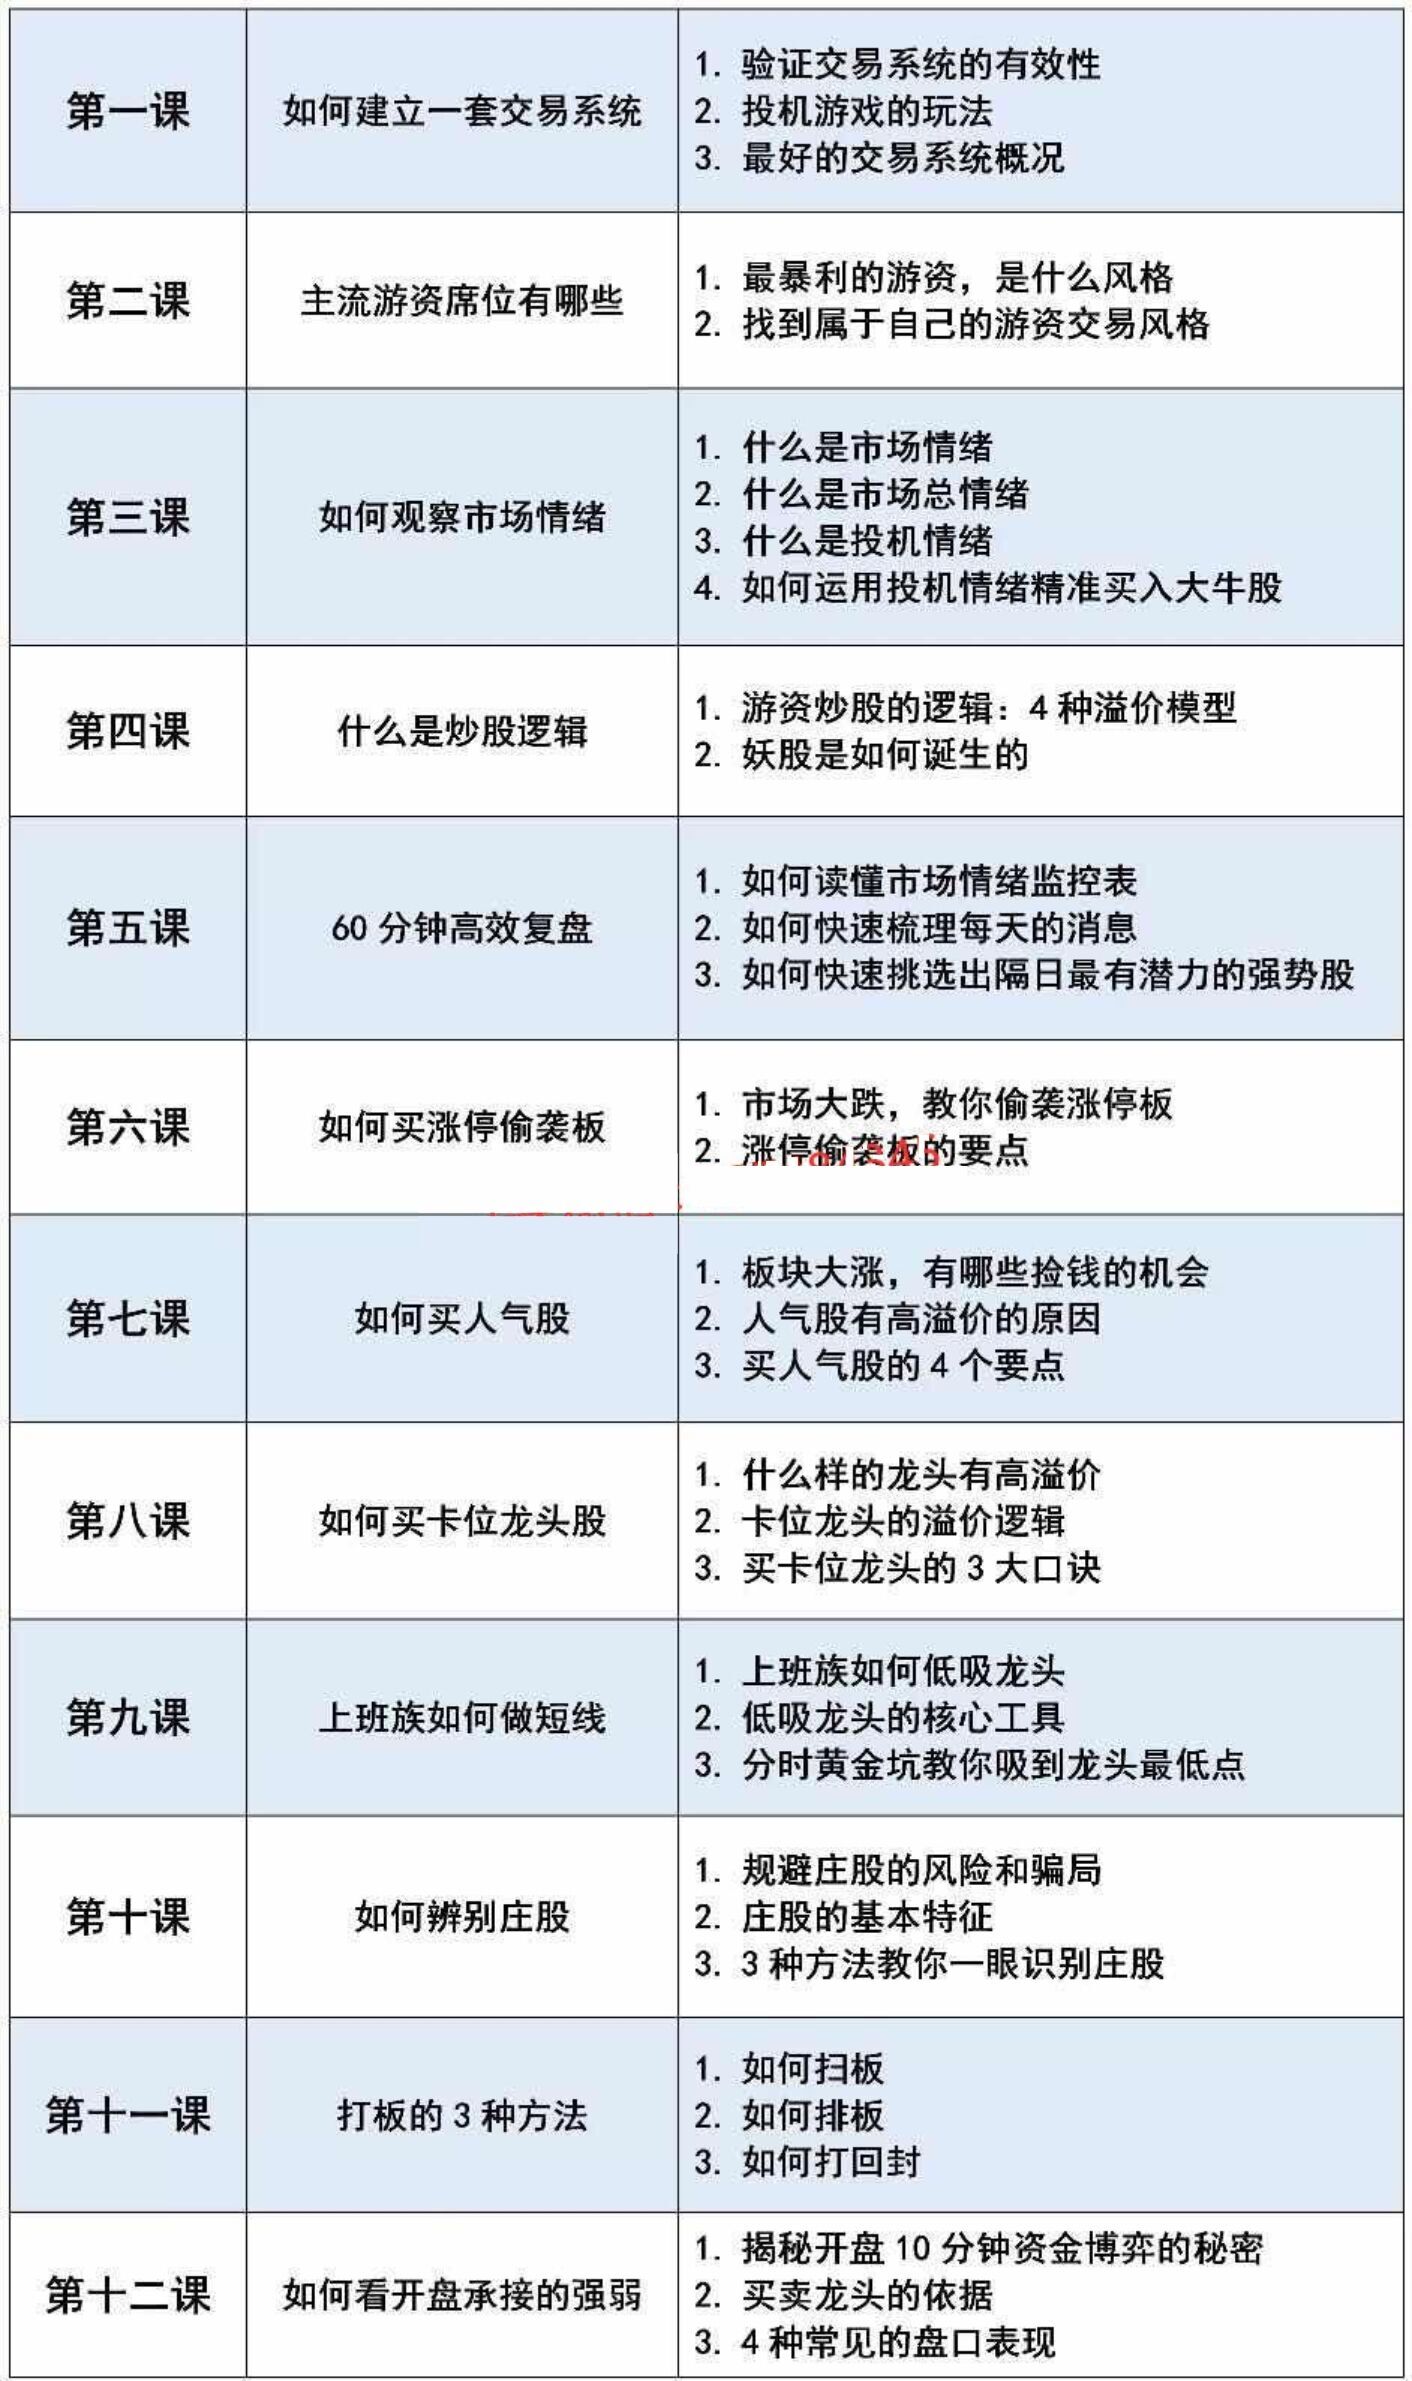 混江龙溢价课程2019年PDF文字资料 12个